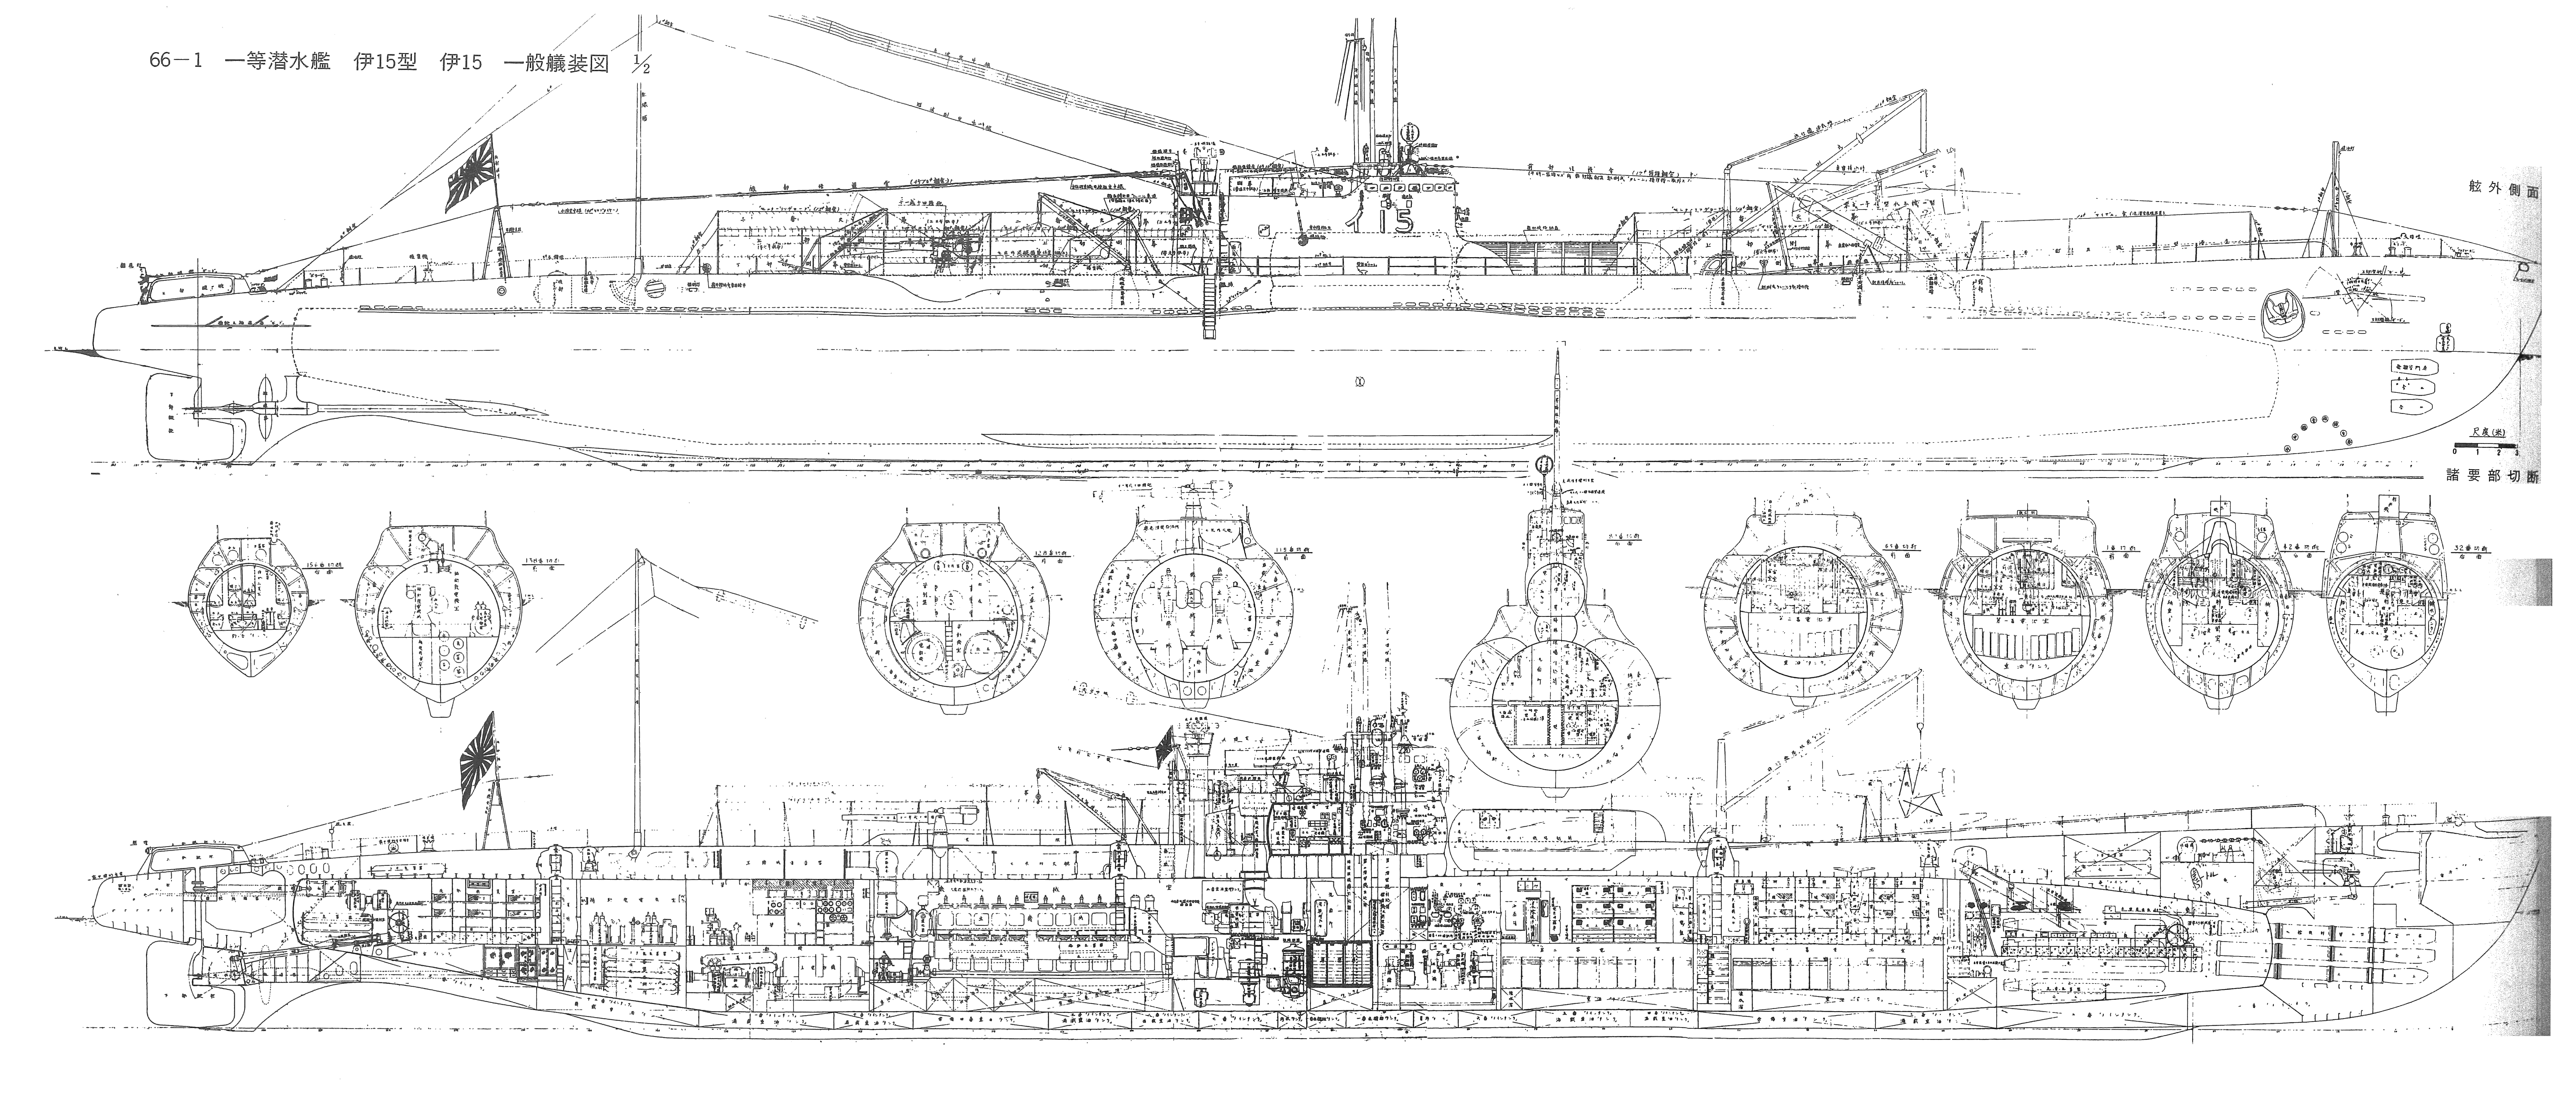 Japanese submarine I-15 blueprint